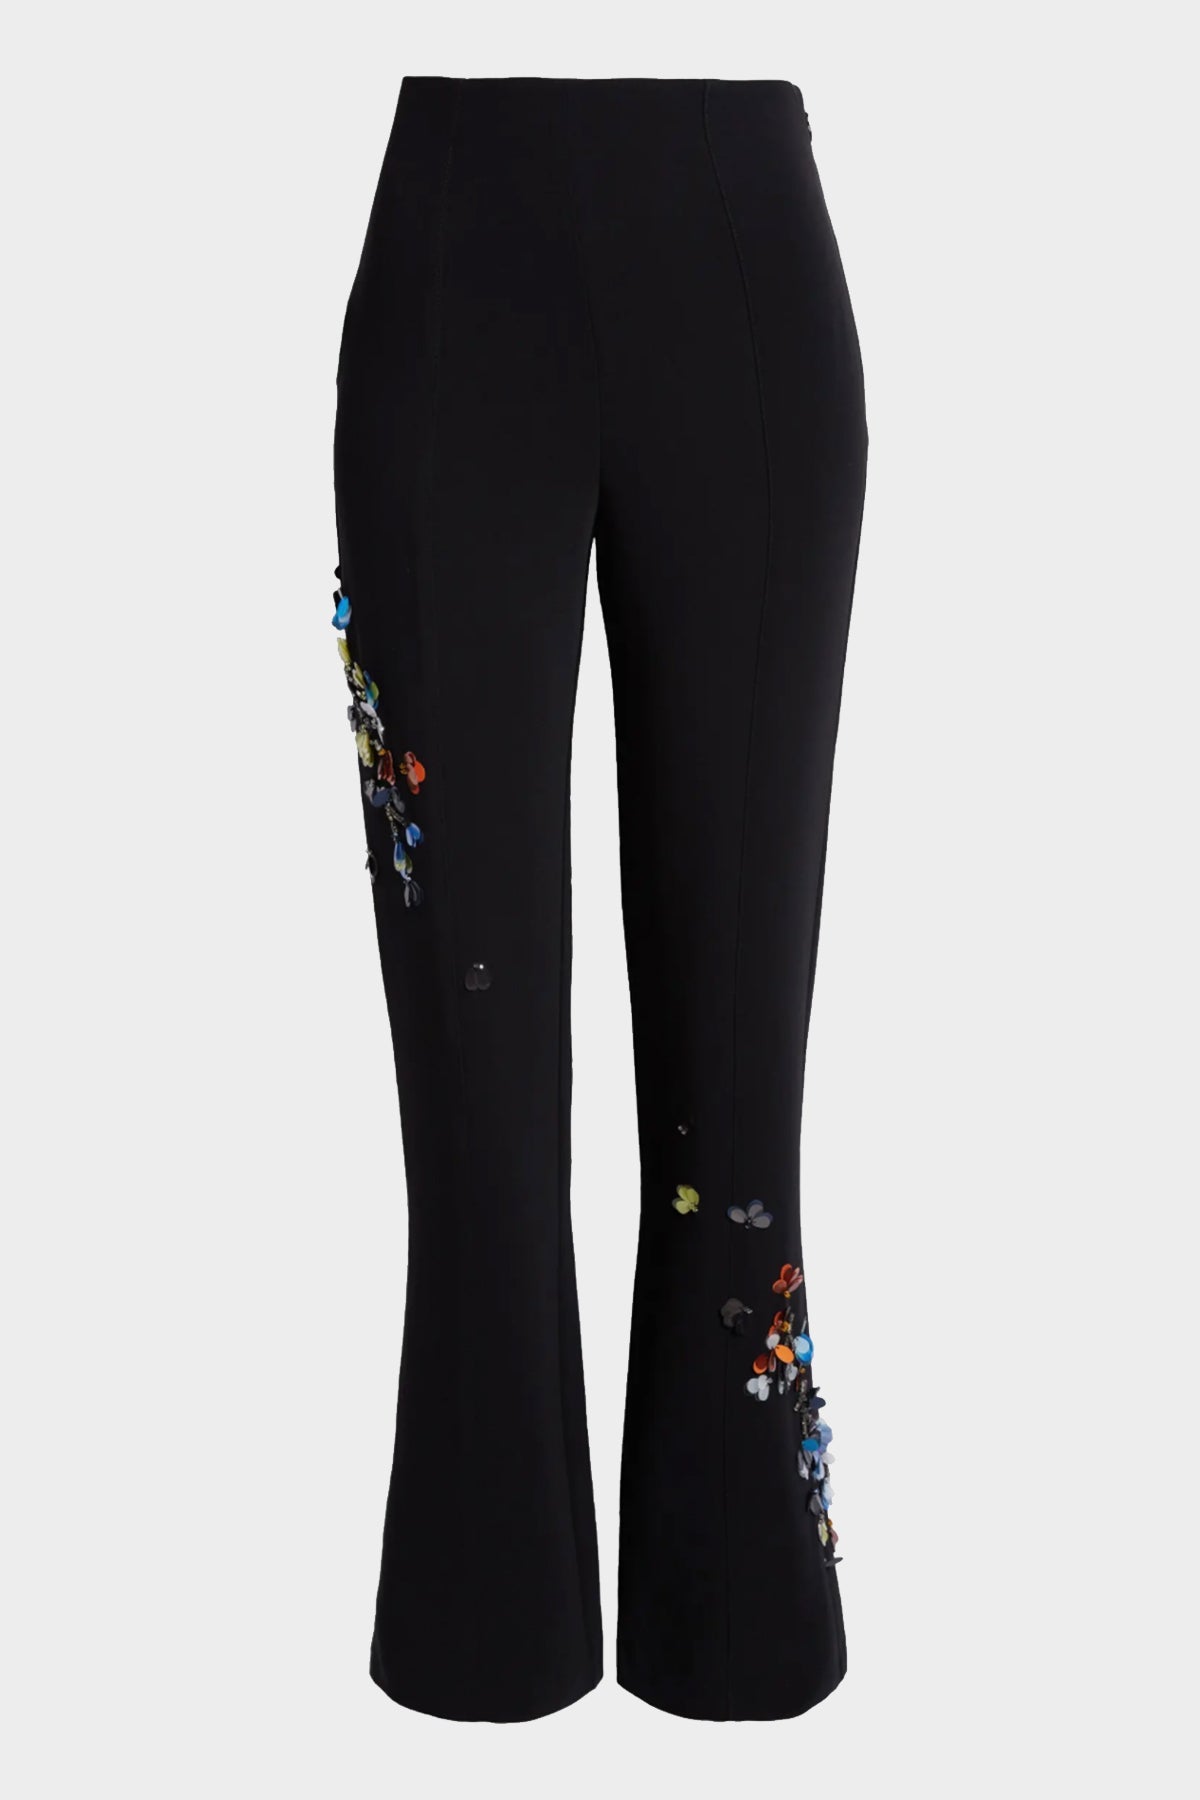 Sequin Flower Kingsley Pant in Black Multi - shop-olivia.com